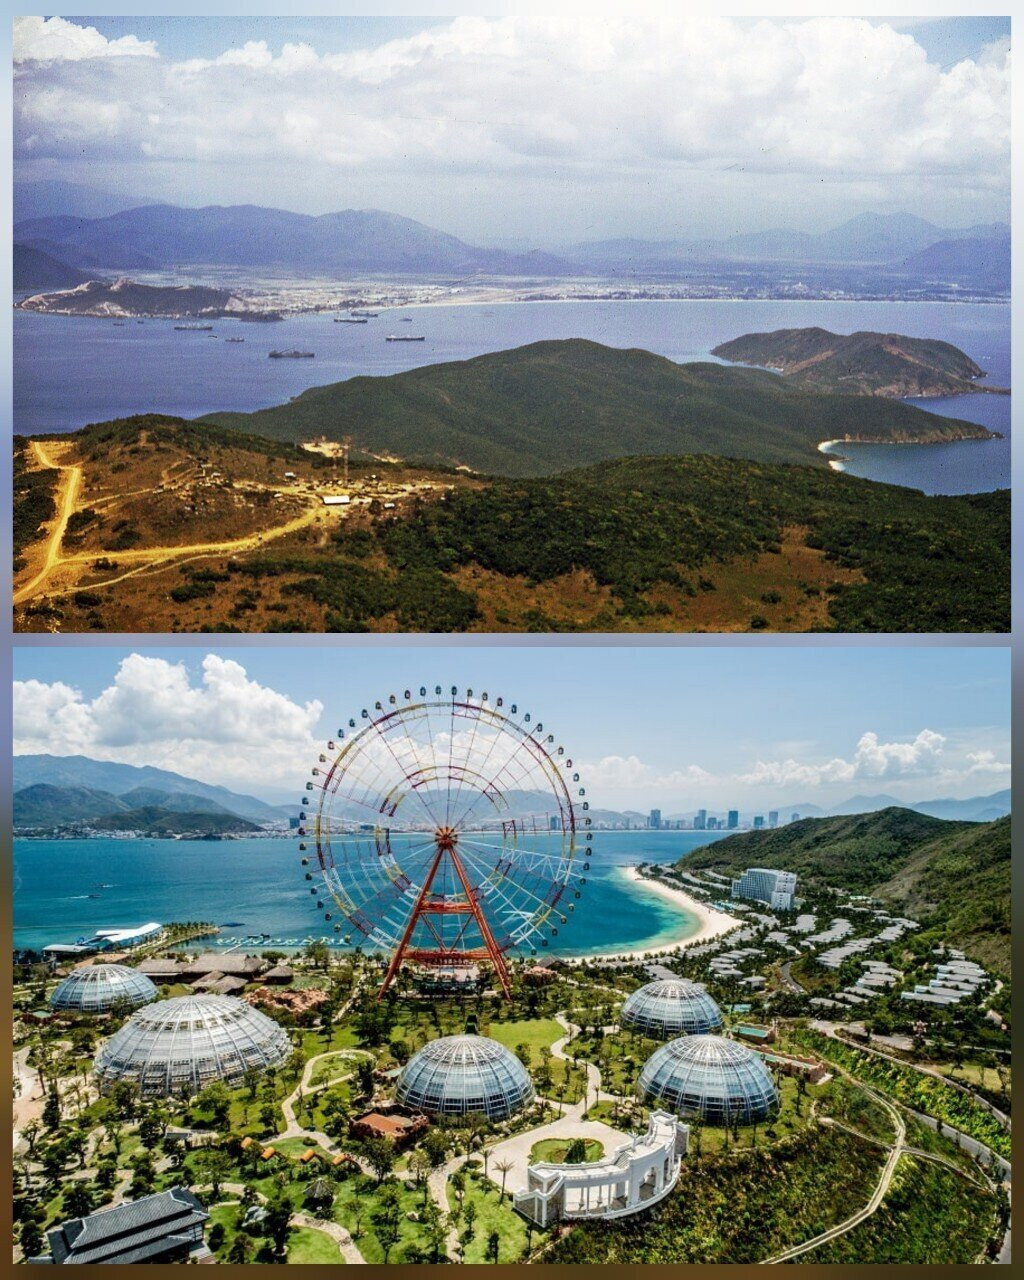 Những năm 1967 - 1969, Hòn Tre là đảo lớn nhất tại Vịnh Nha Trang nhưng chưa được đầu tư (ảnh trên). Đến nay, đảo đã thành khu vui chơi, nghỉ dưỡng, trở thành điểm đến quen thuộc của du khách (ảnh dưới).